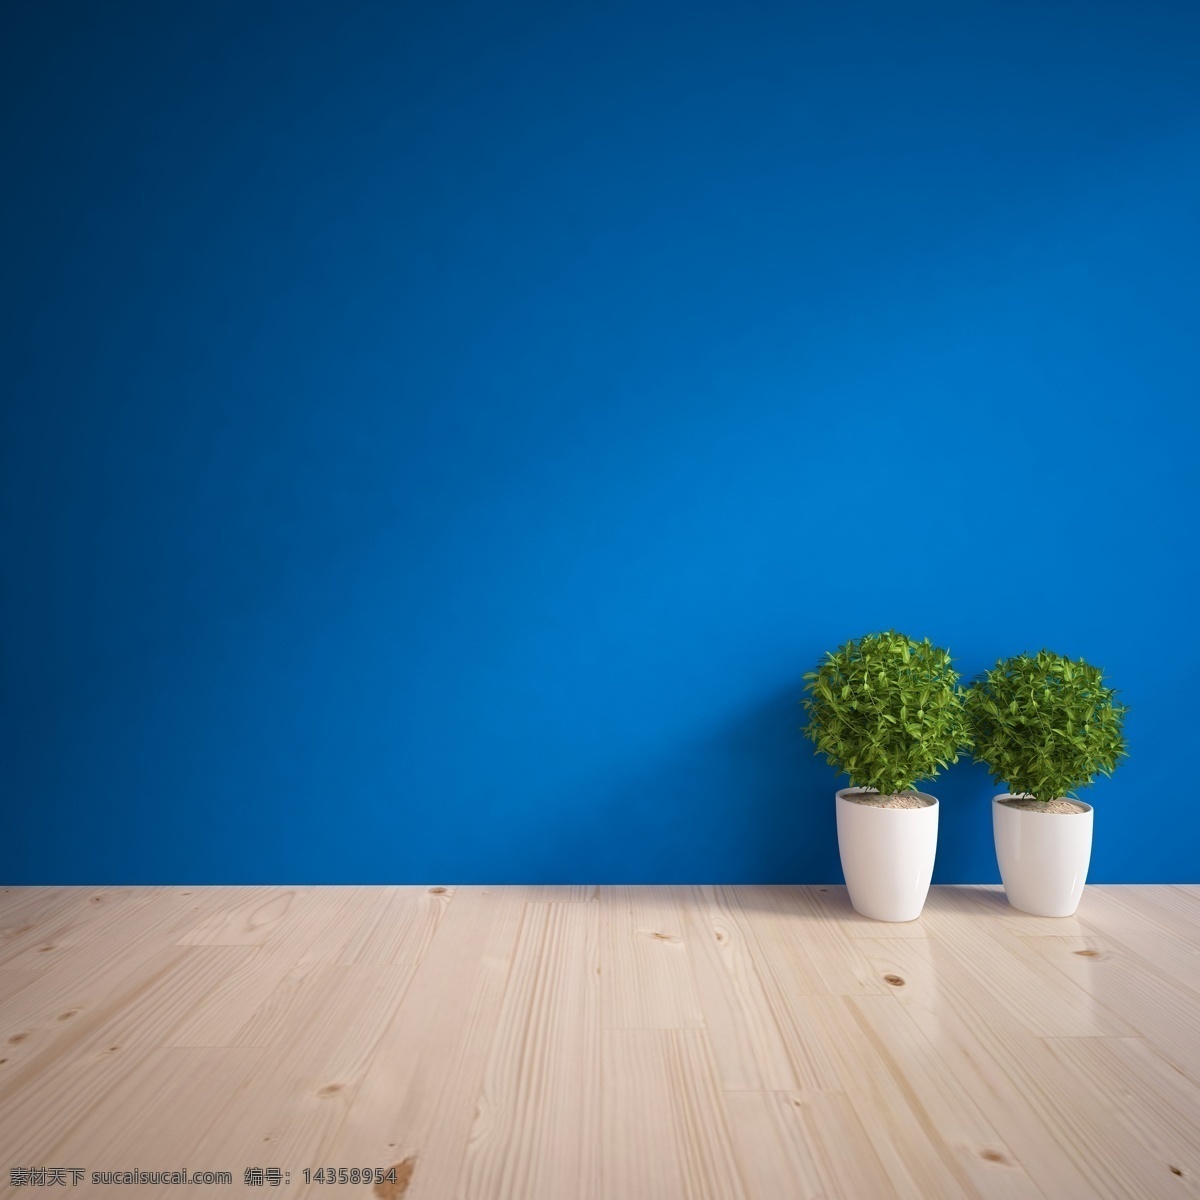 简洁 蓝色 墙壁 简洁蓝色墙壁 装潢设计 室内装饰 室内装修 简约 现代 时尚 黄色 清爽 室内设计 环境家居